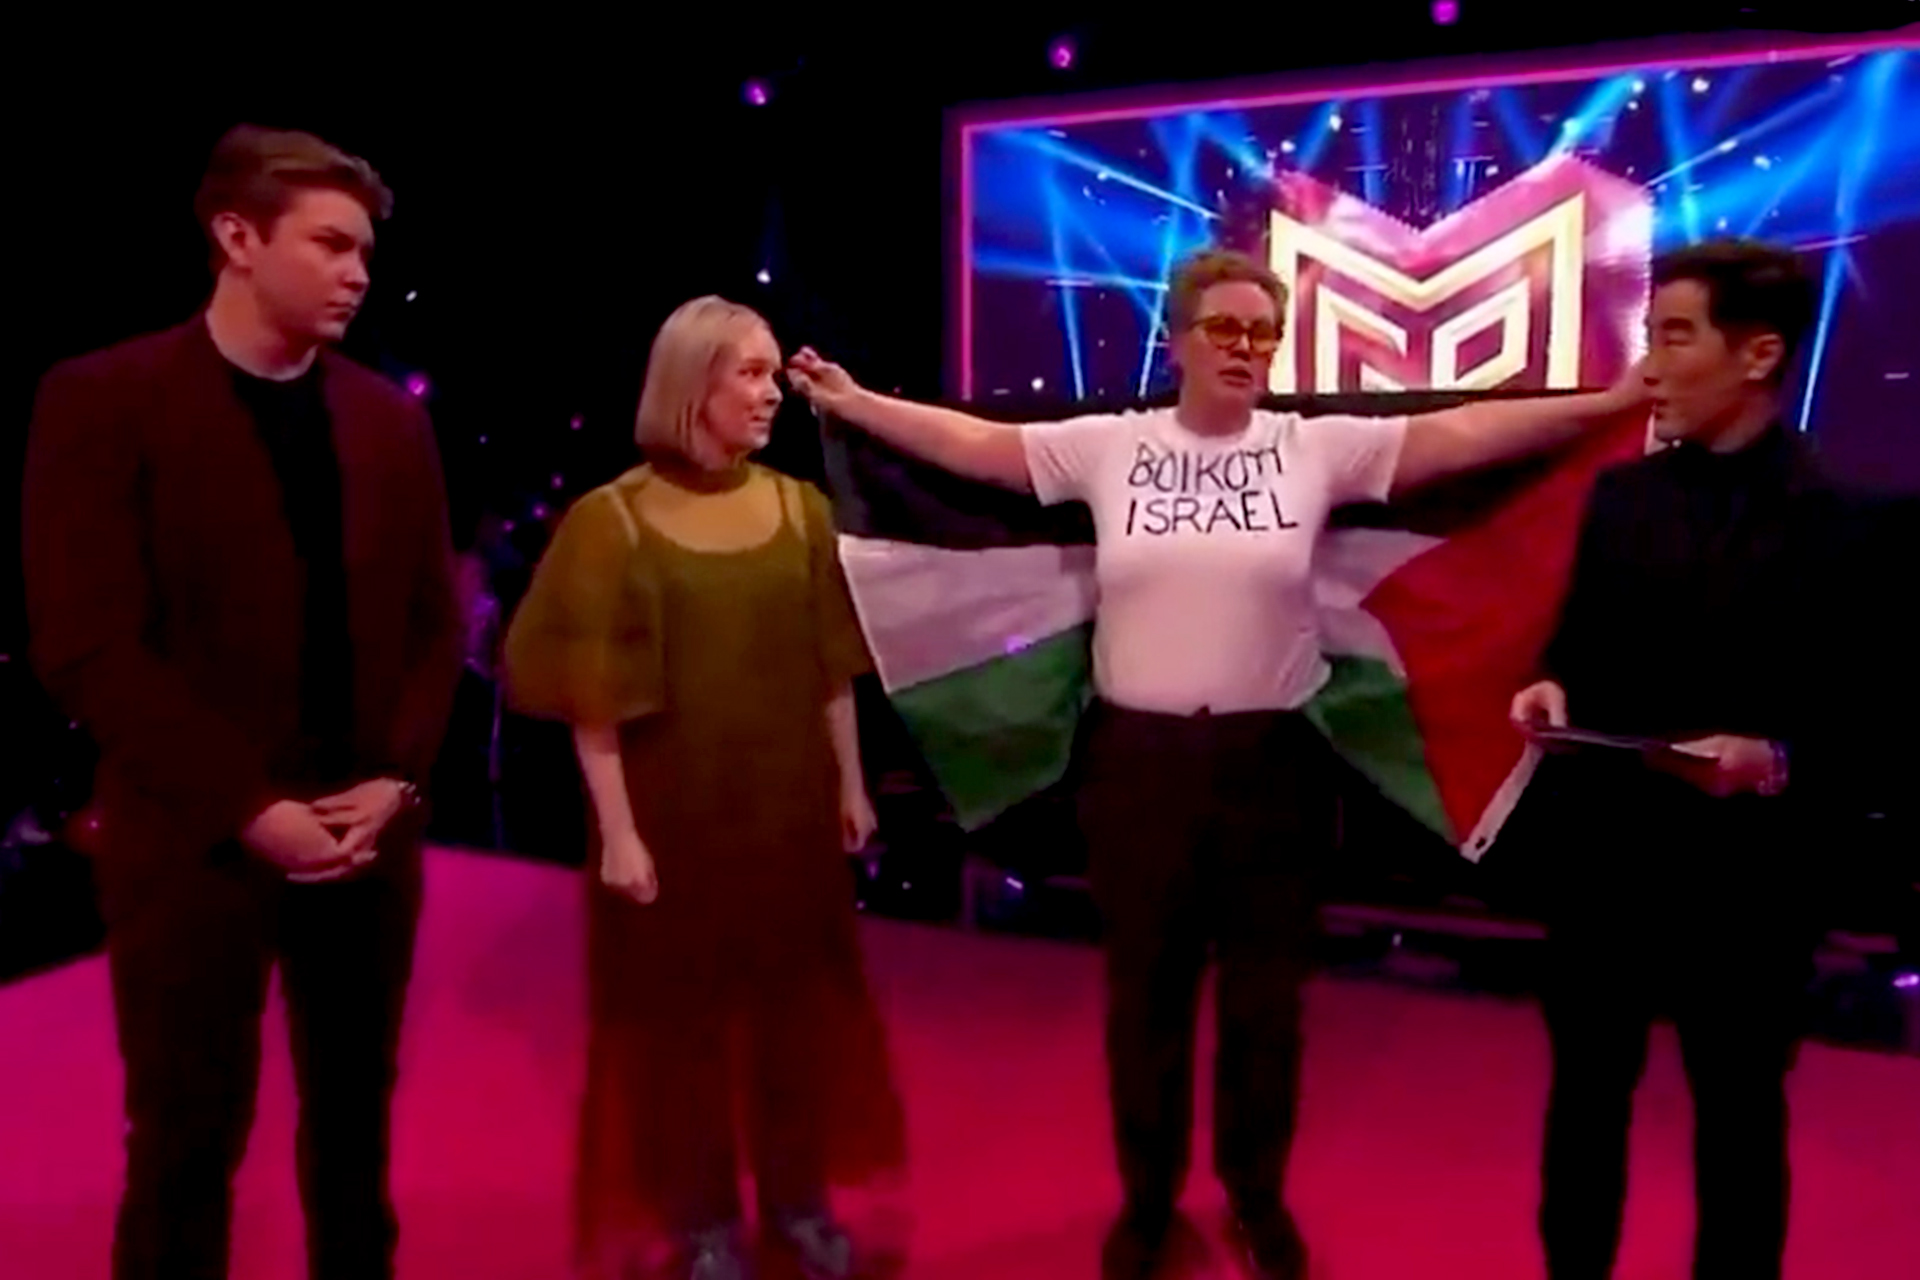 سياسية نرويجية خلال حفل “يوروفيجن”: قاطعوا إسرائيل | فن – البوكس نيوز